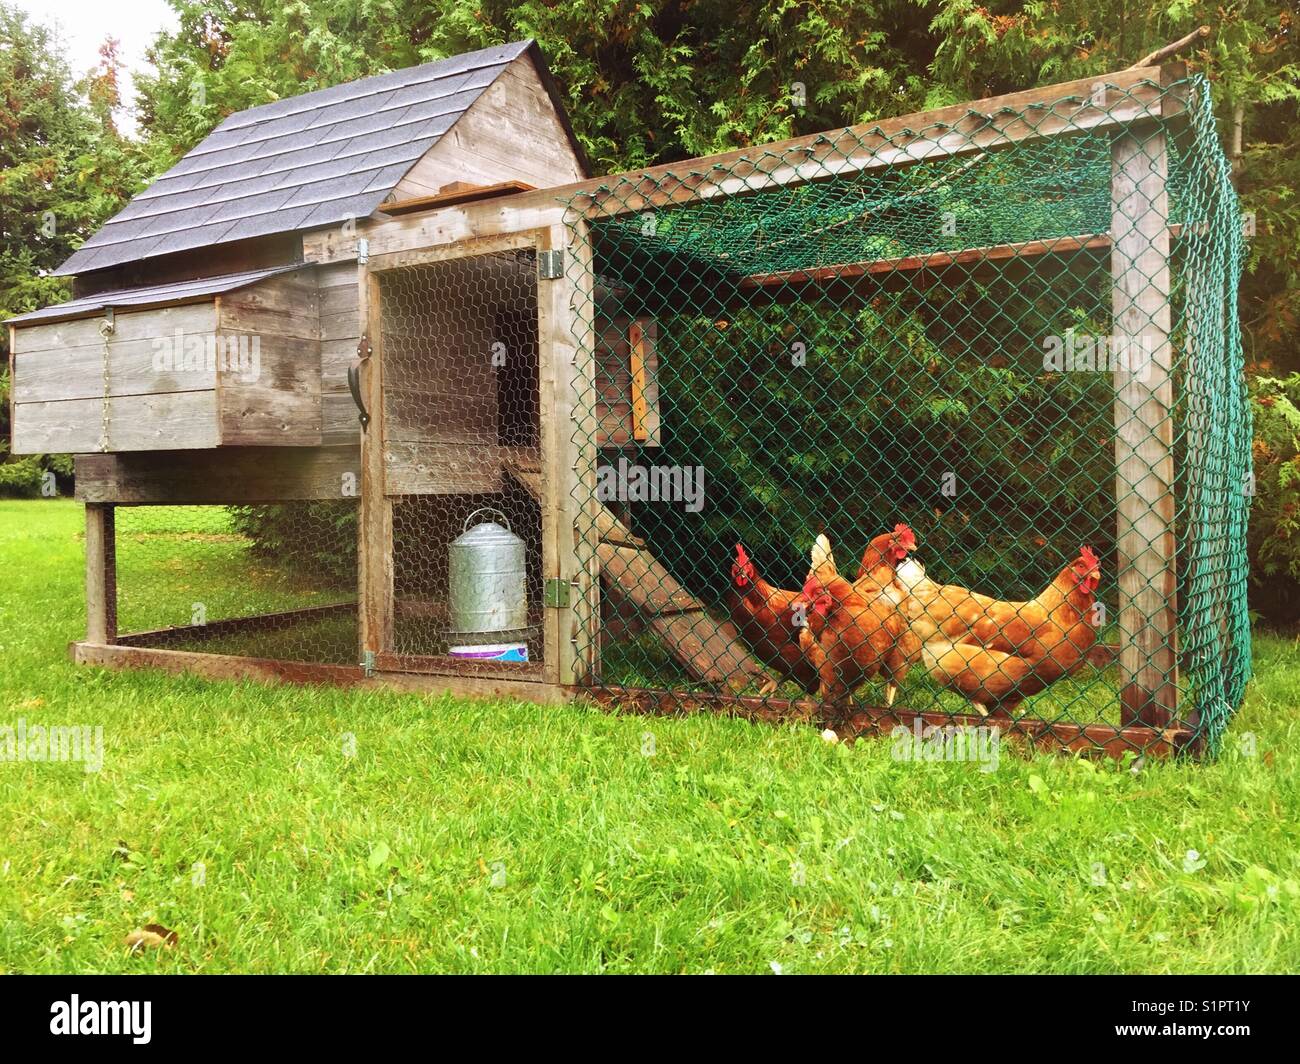 Patio gallinero con cuatro pollos dentro Fotografía de stock - Alamy